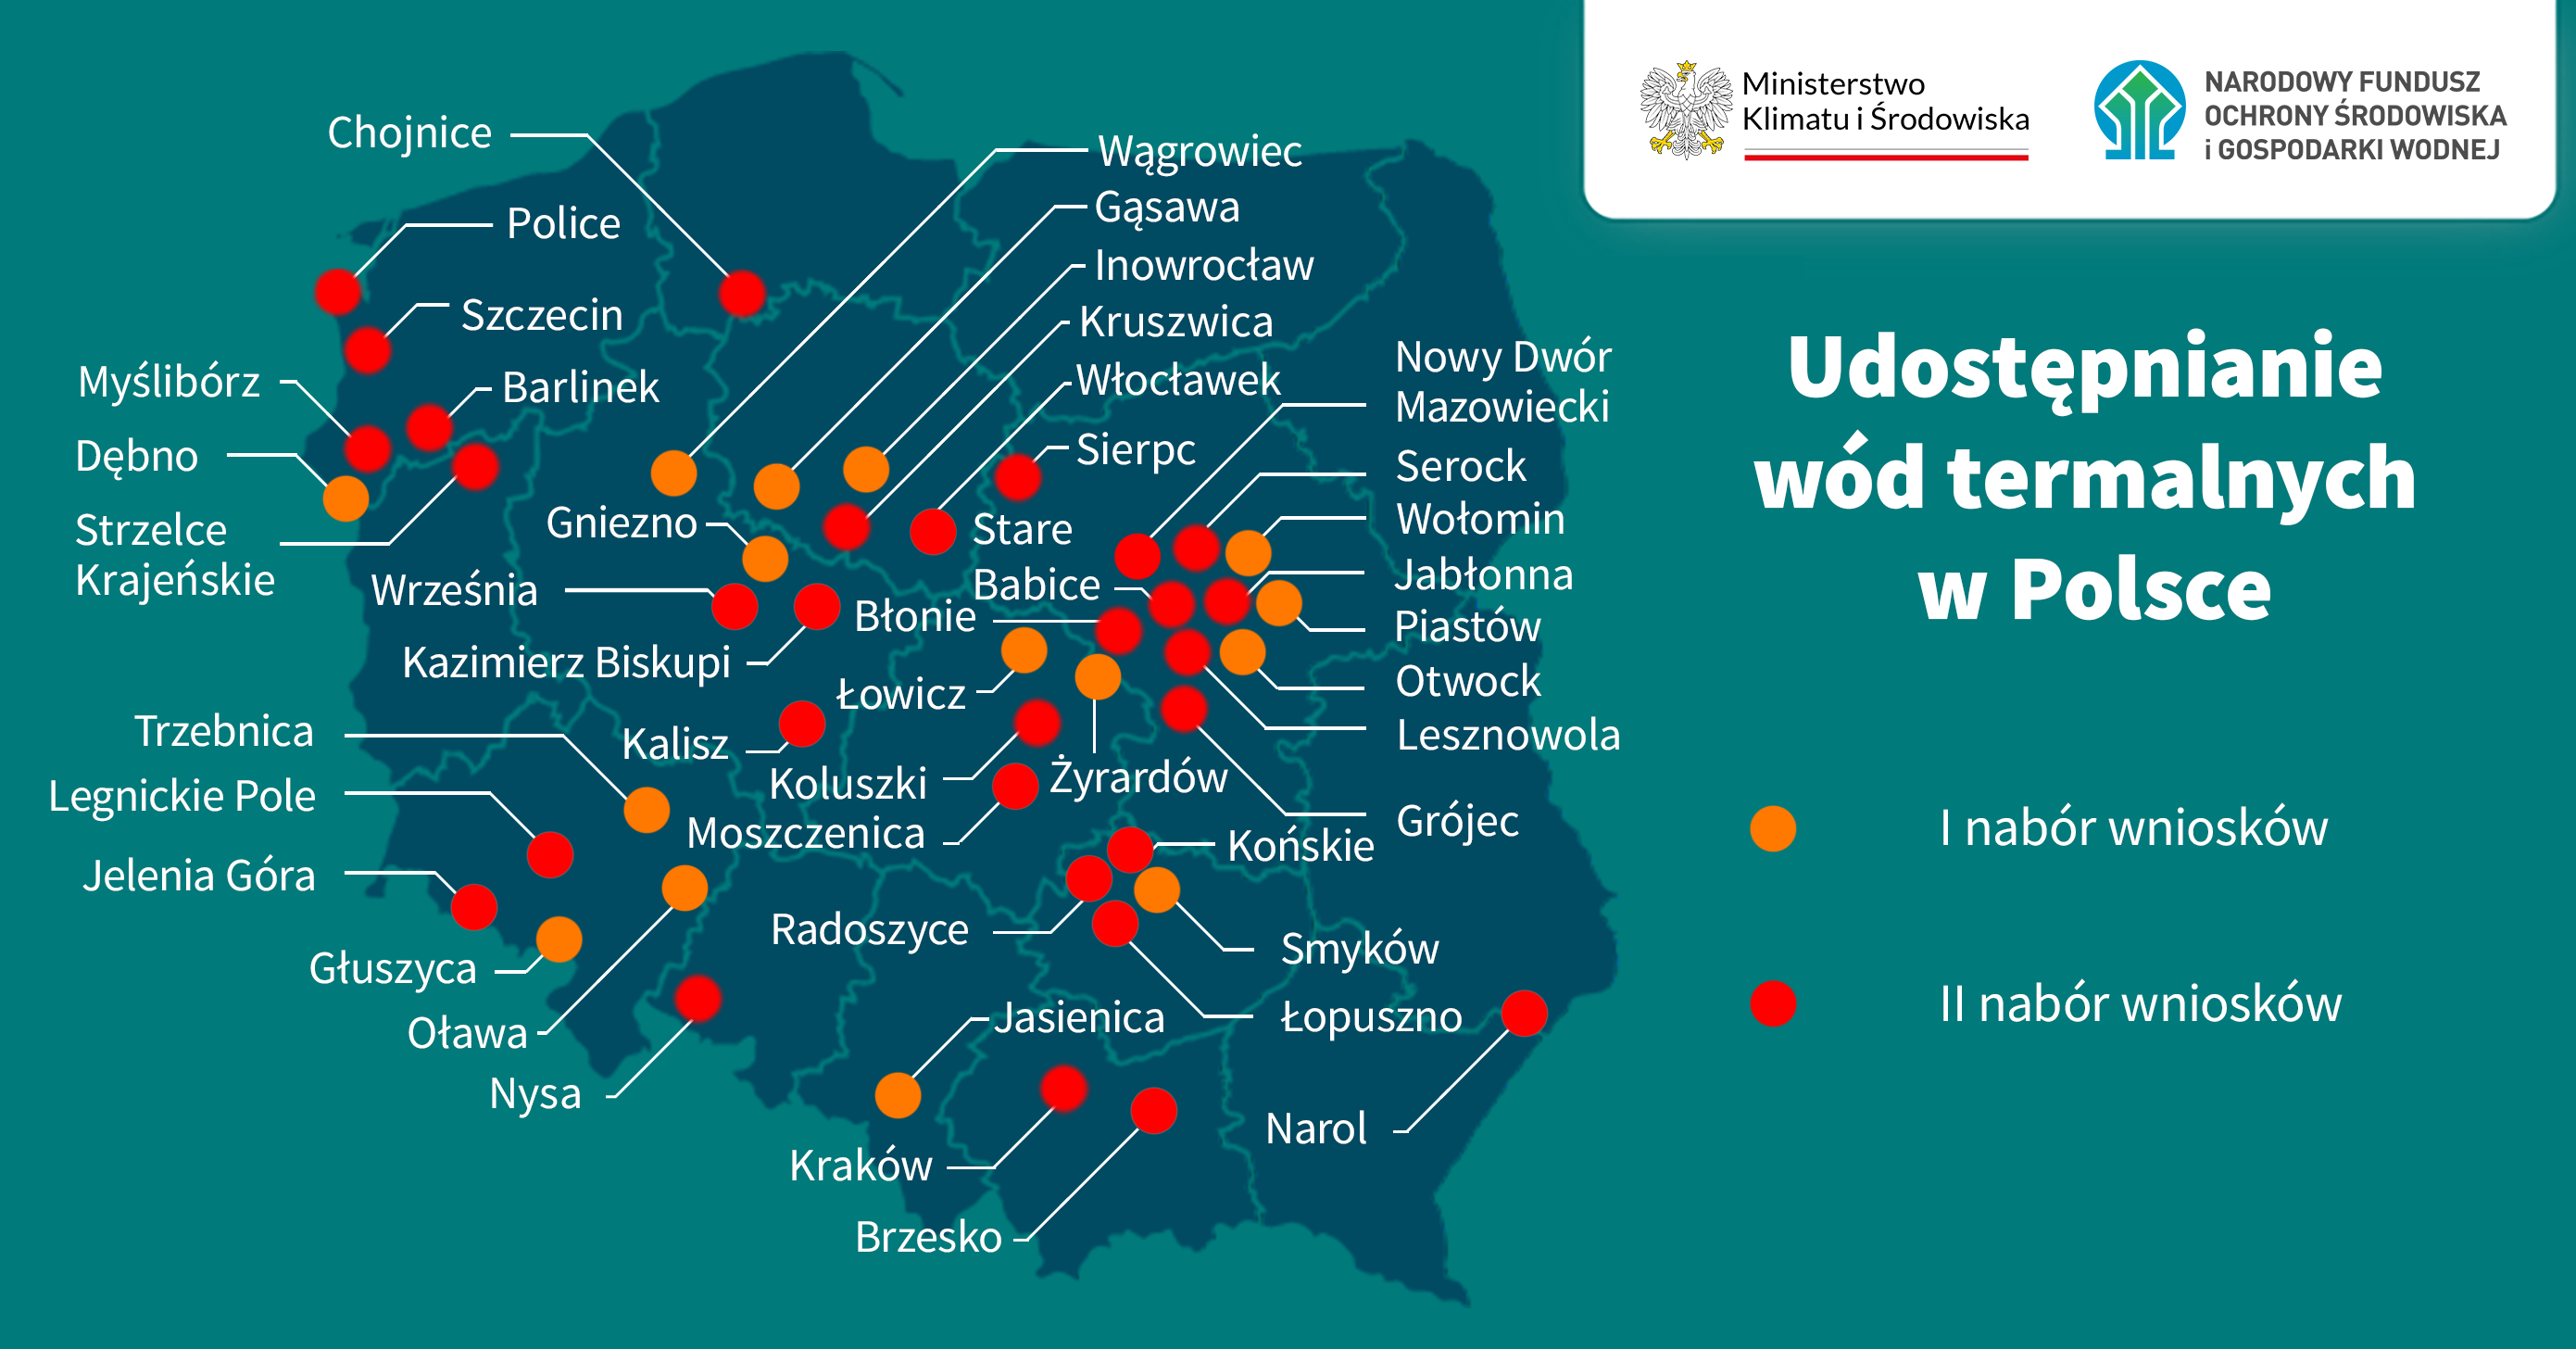 Udostępnianie wód termalnych w Polsce. Wyniki naborów w programie priorytetowym